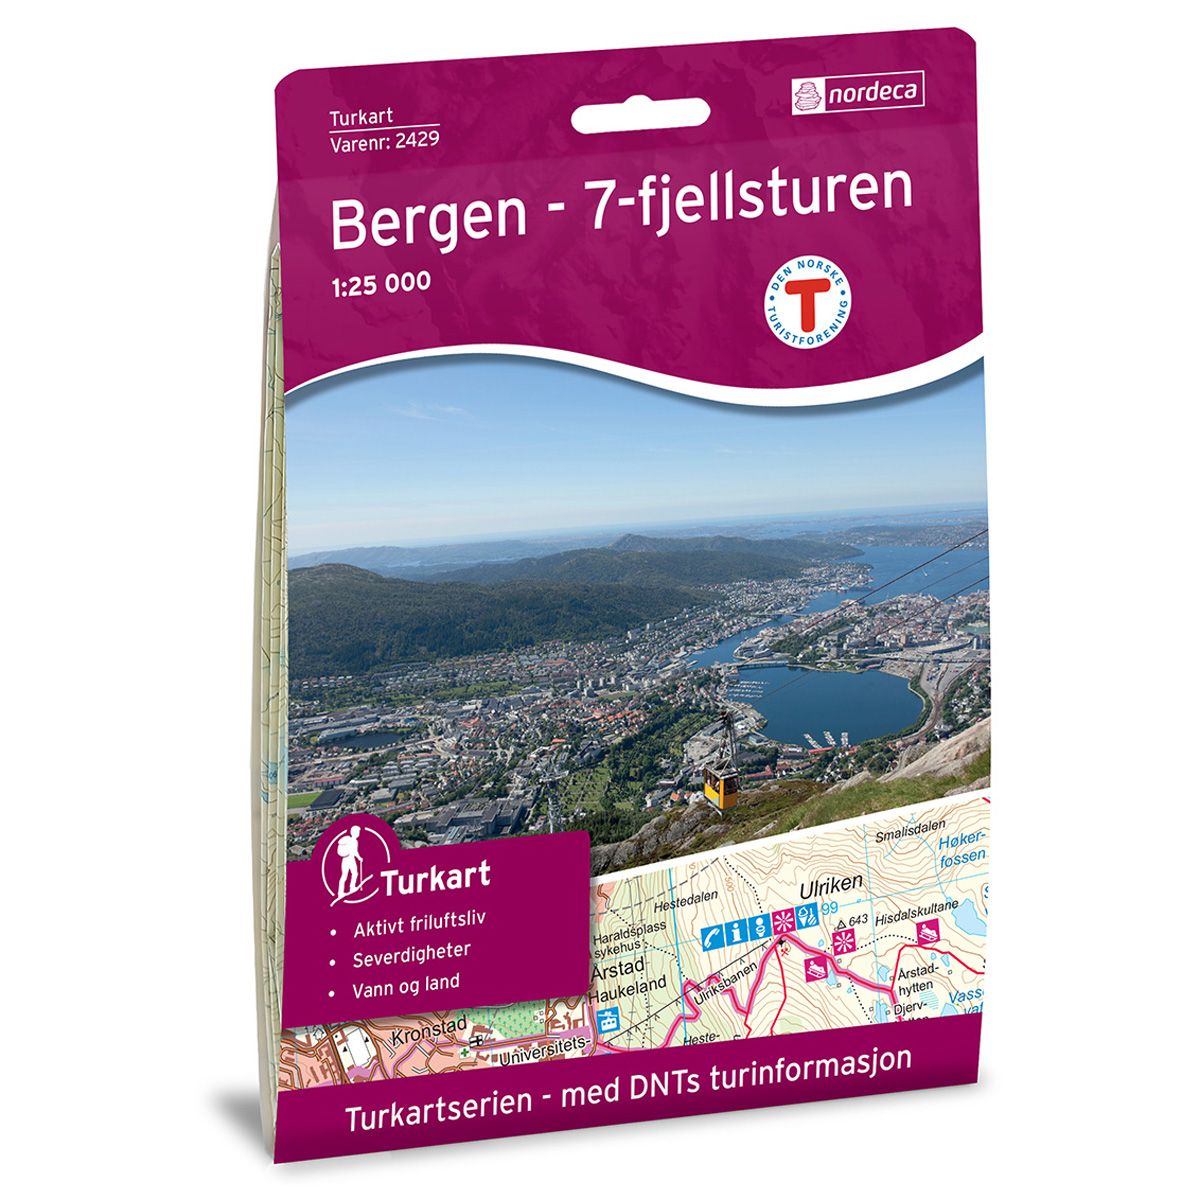 Turkart, Bergen 7-Fjellsturen